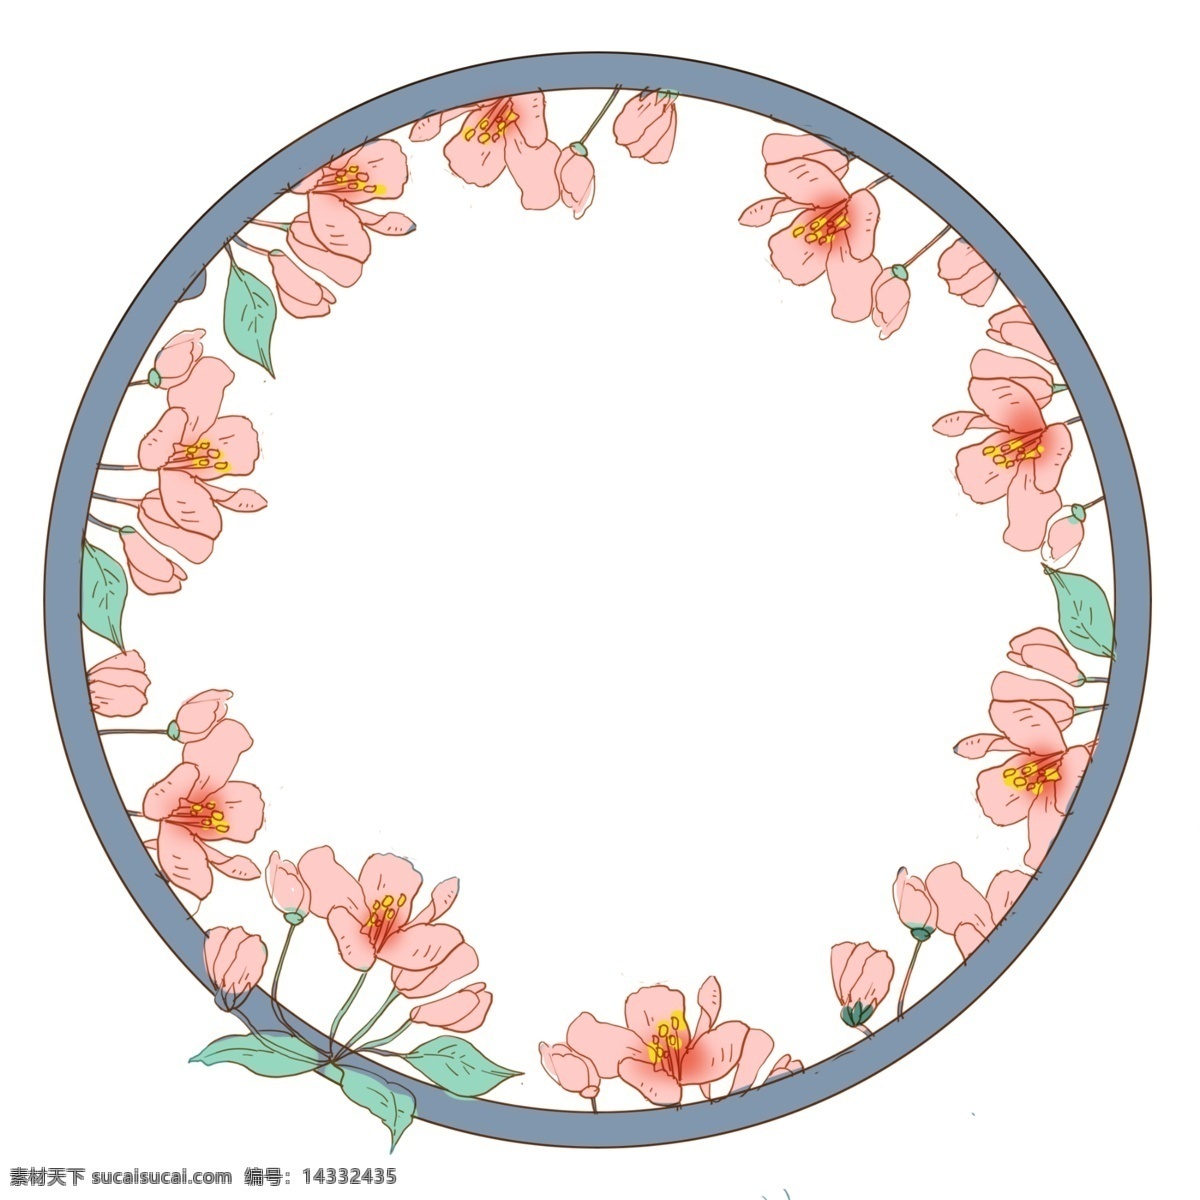 圆形 粉色 花朵 边框 圆形边框 粉色花朵边框 粉色花枝 植物 唯美的边框 春季边框 绿叶装饰边框